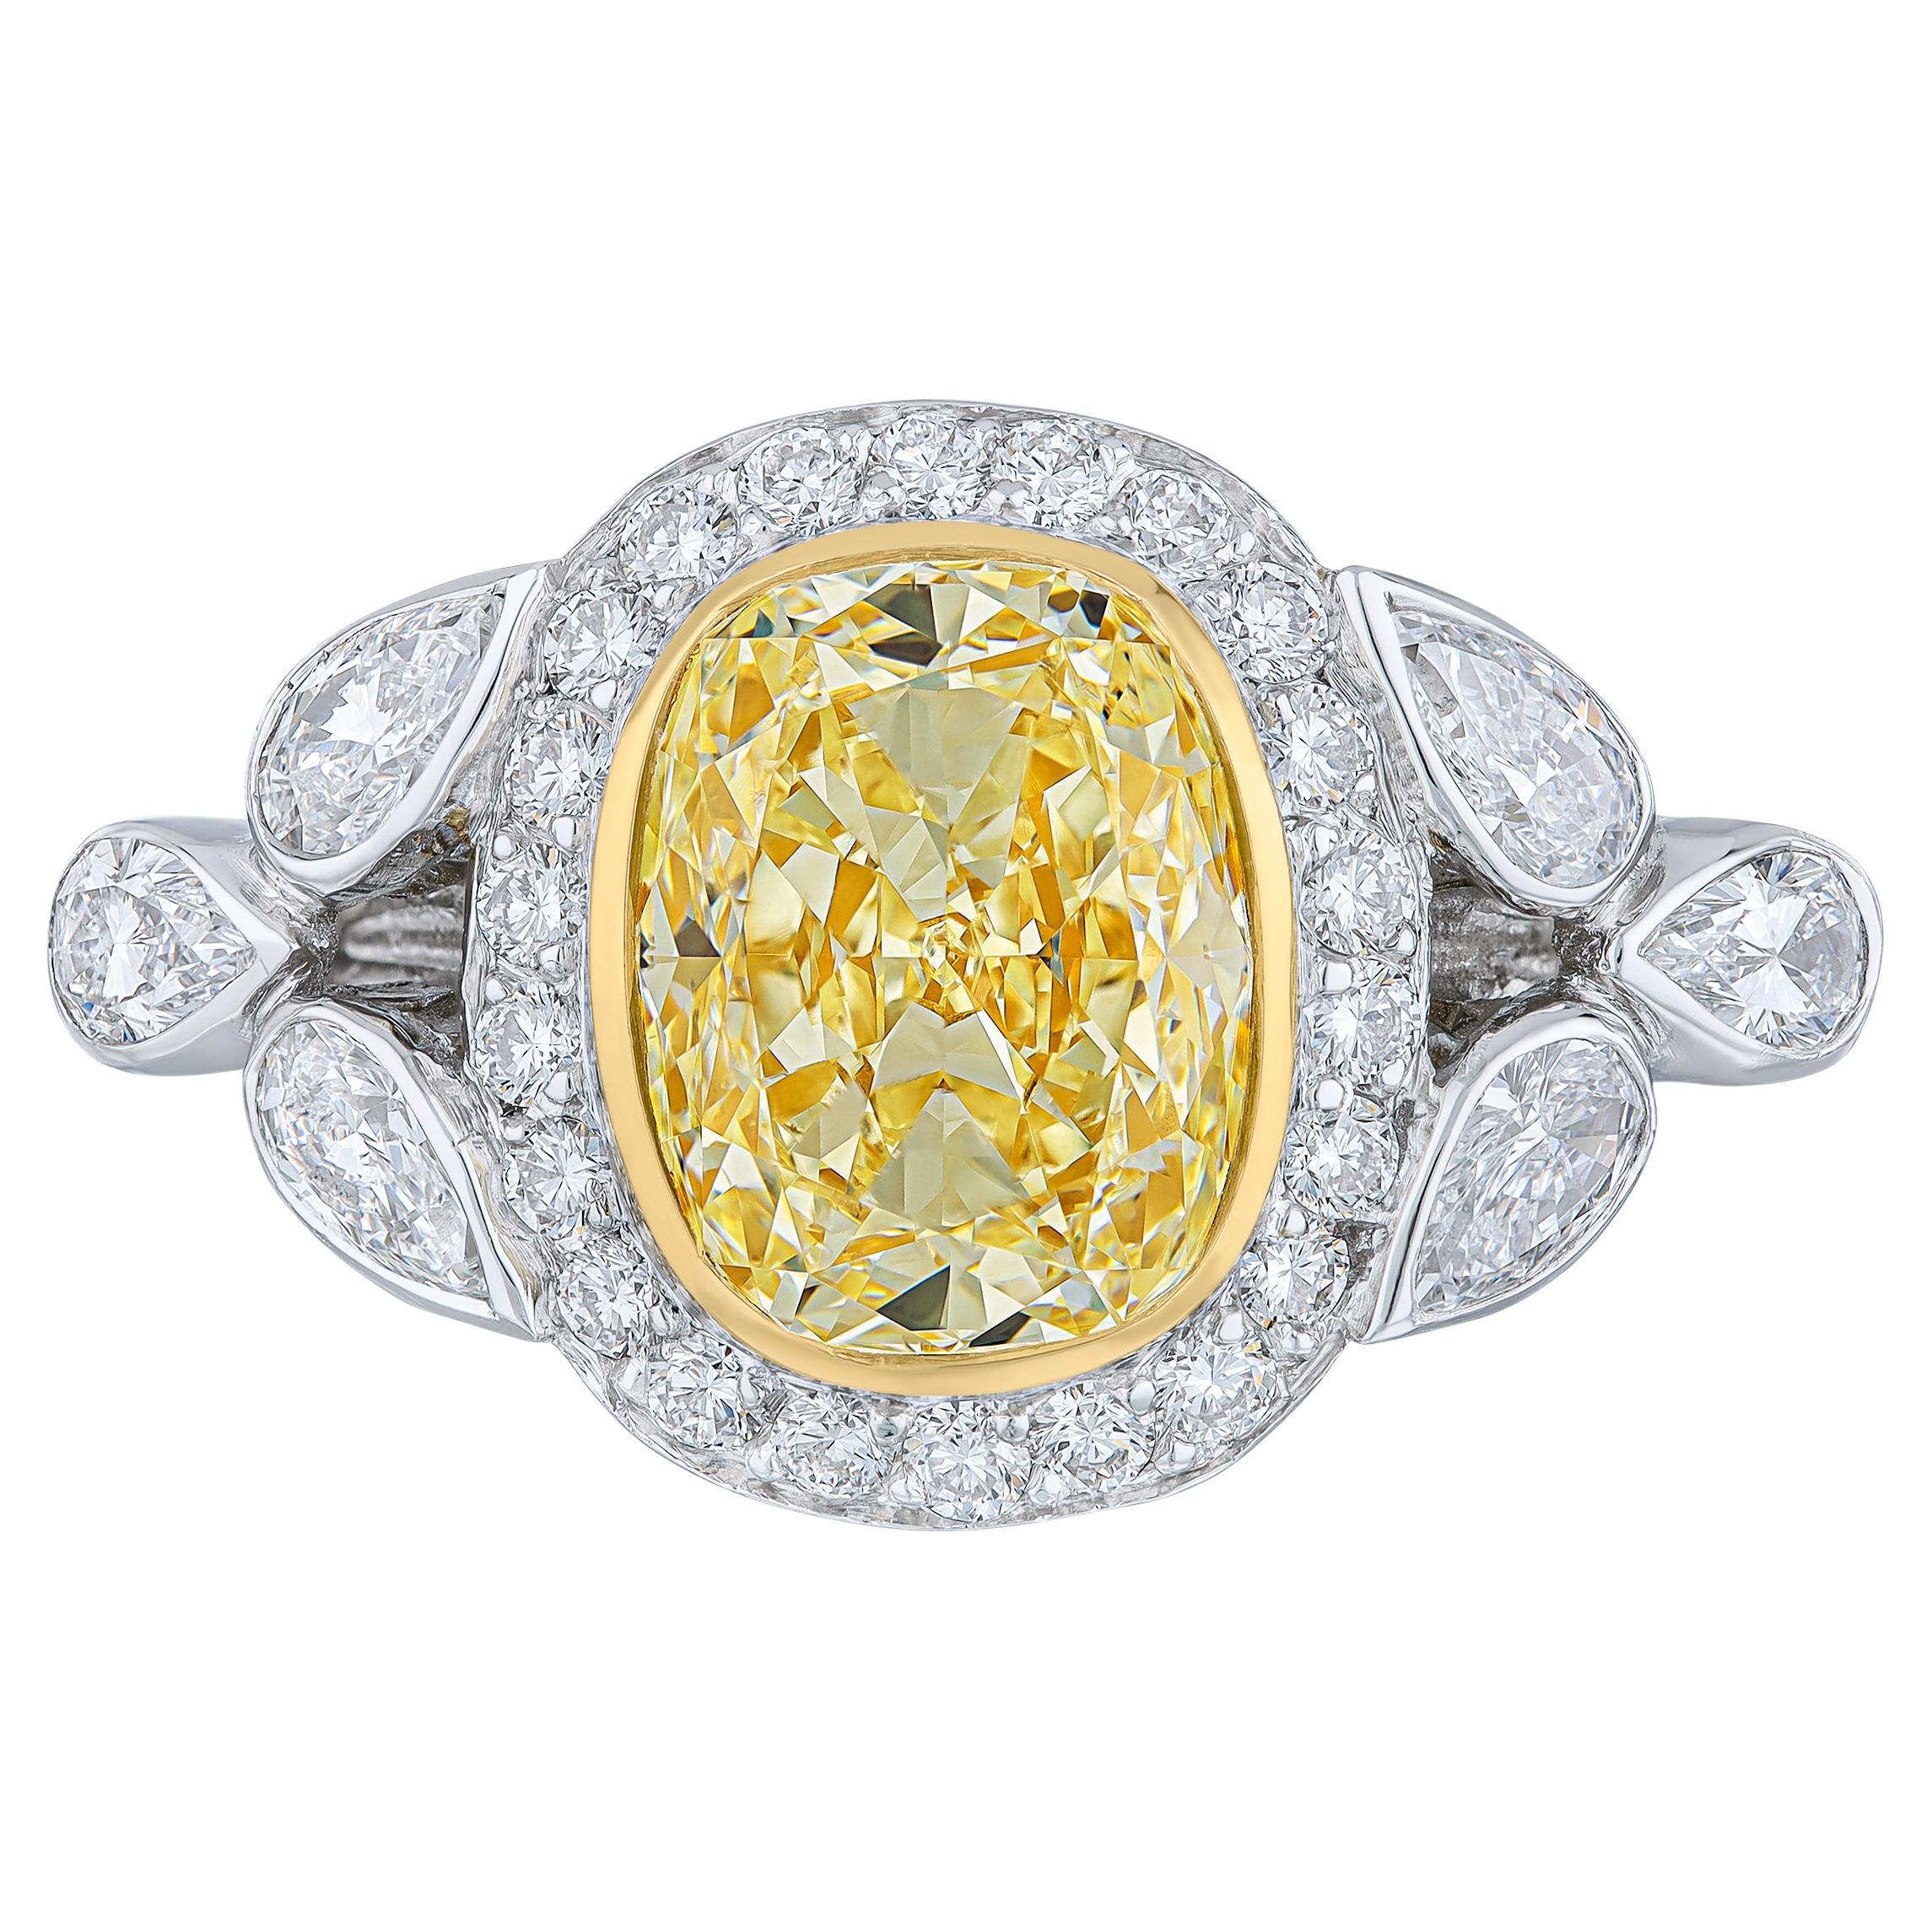 Gelber Diamantring aus Platin mit 3,03 Karat zertifiziertem Diamanten